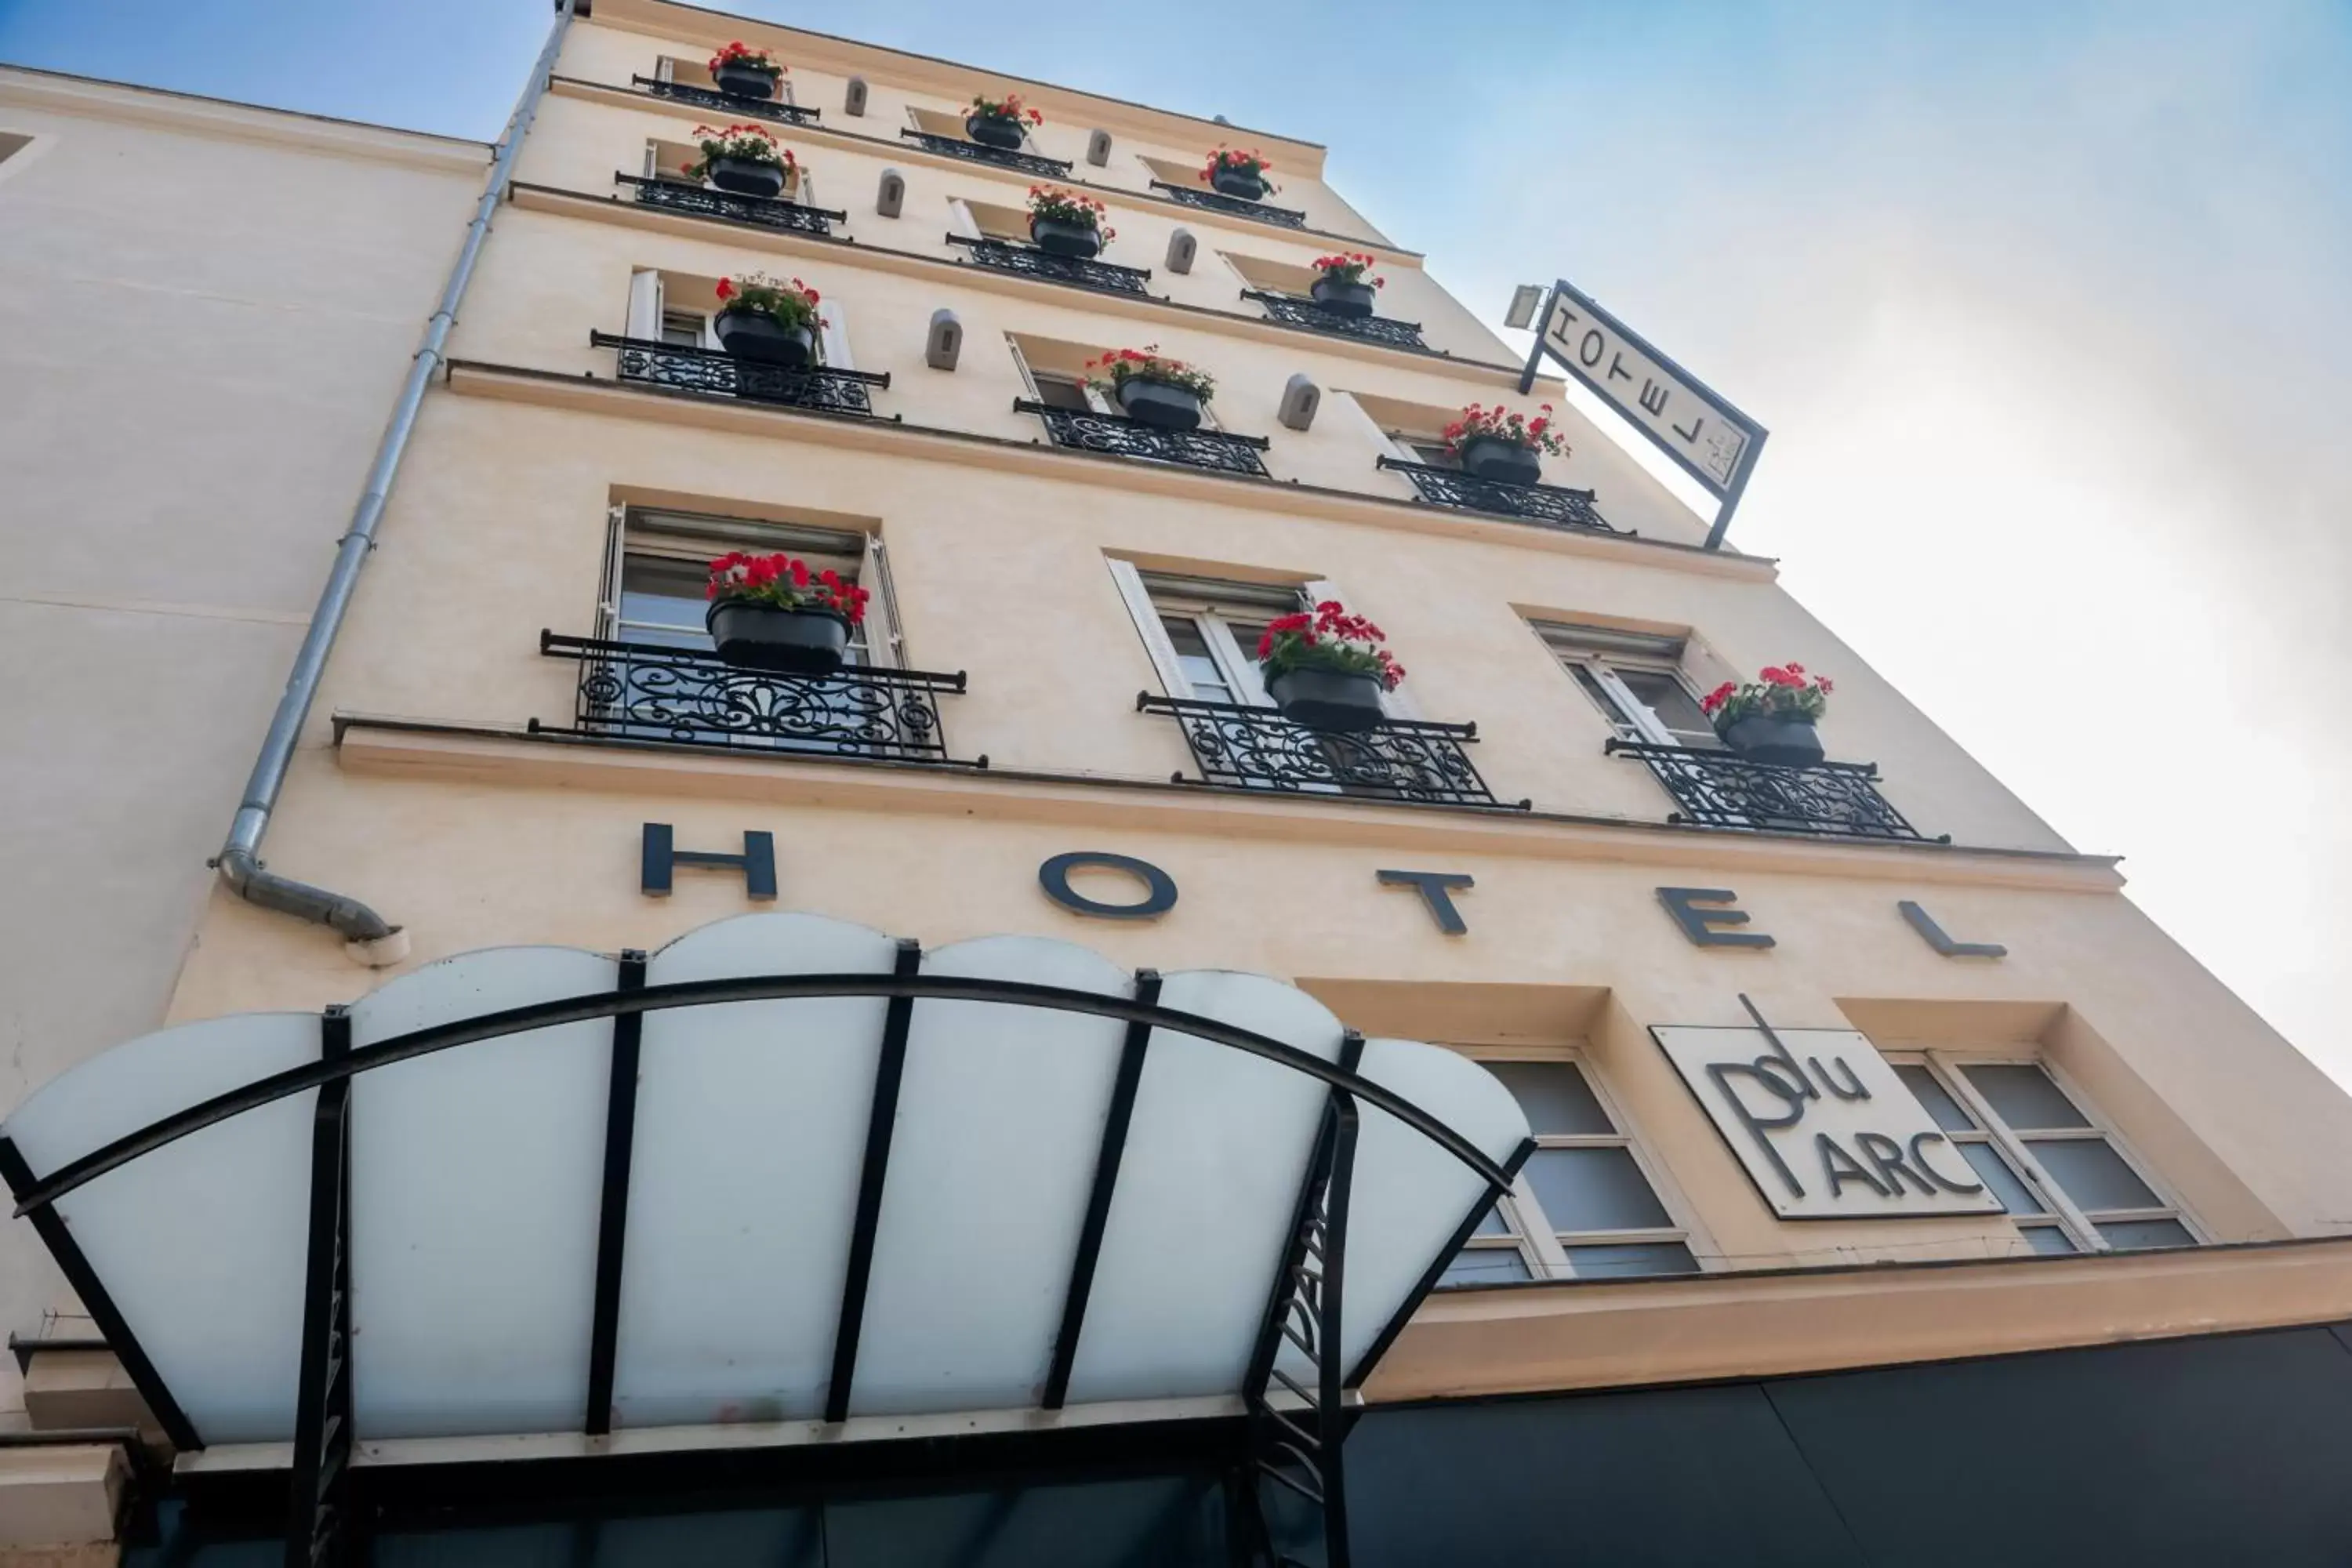 Facade/entrance, Property Building in Hôtel du Parc Montparnasse